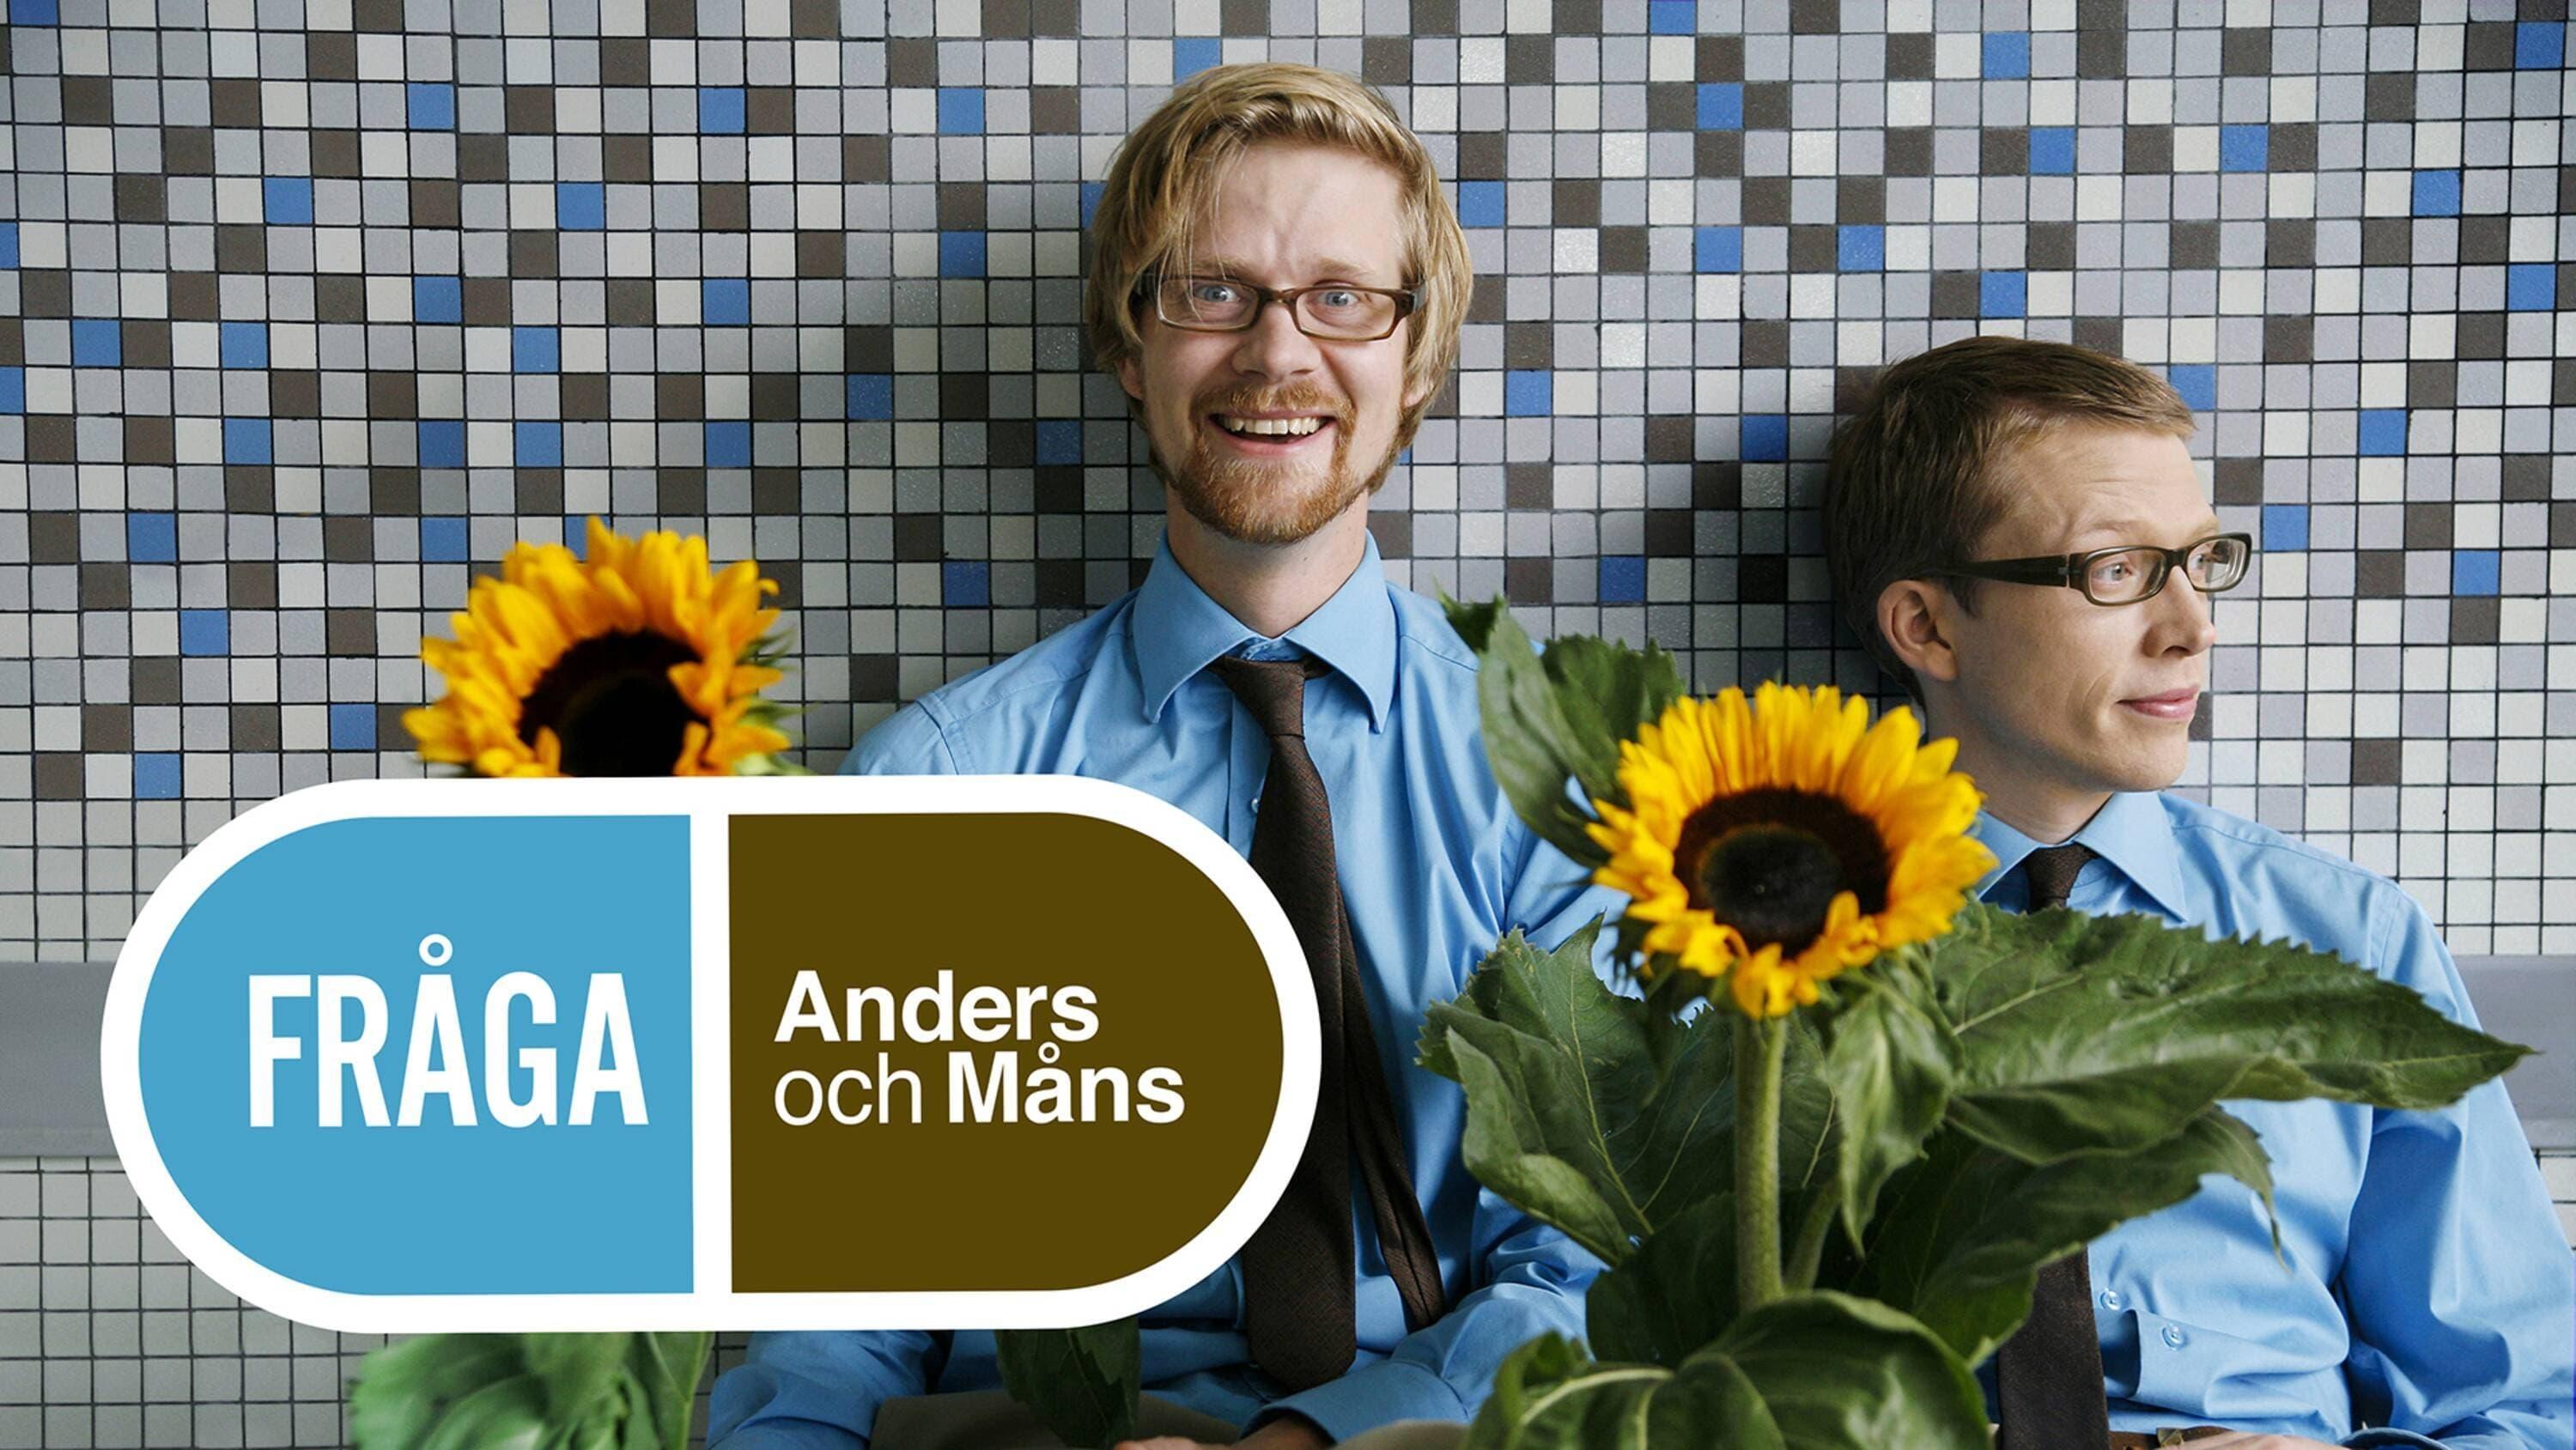 Fråga Anders och Måns backdrop